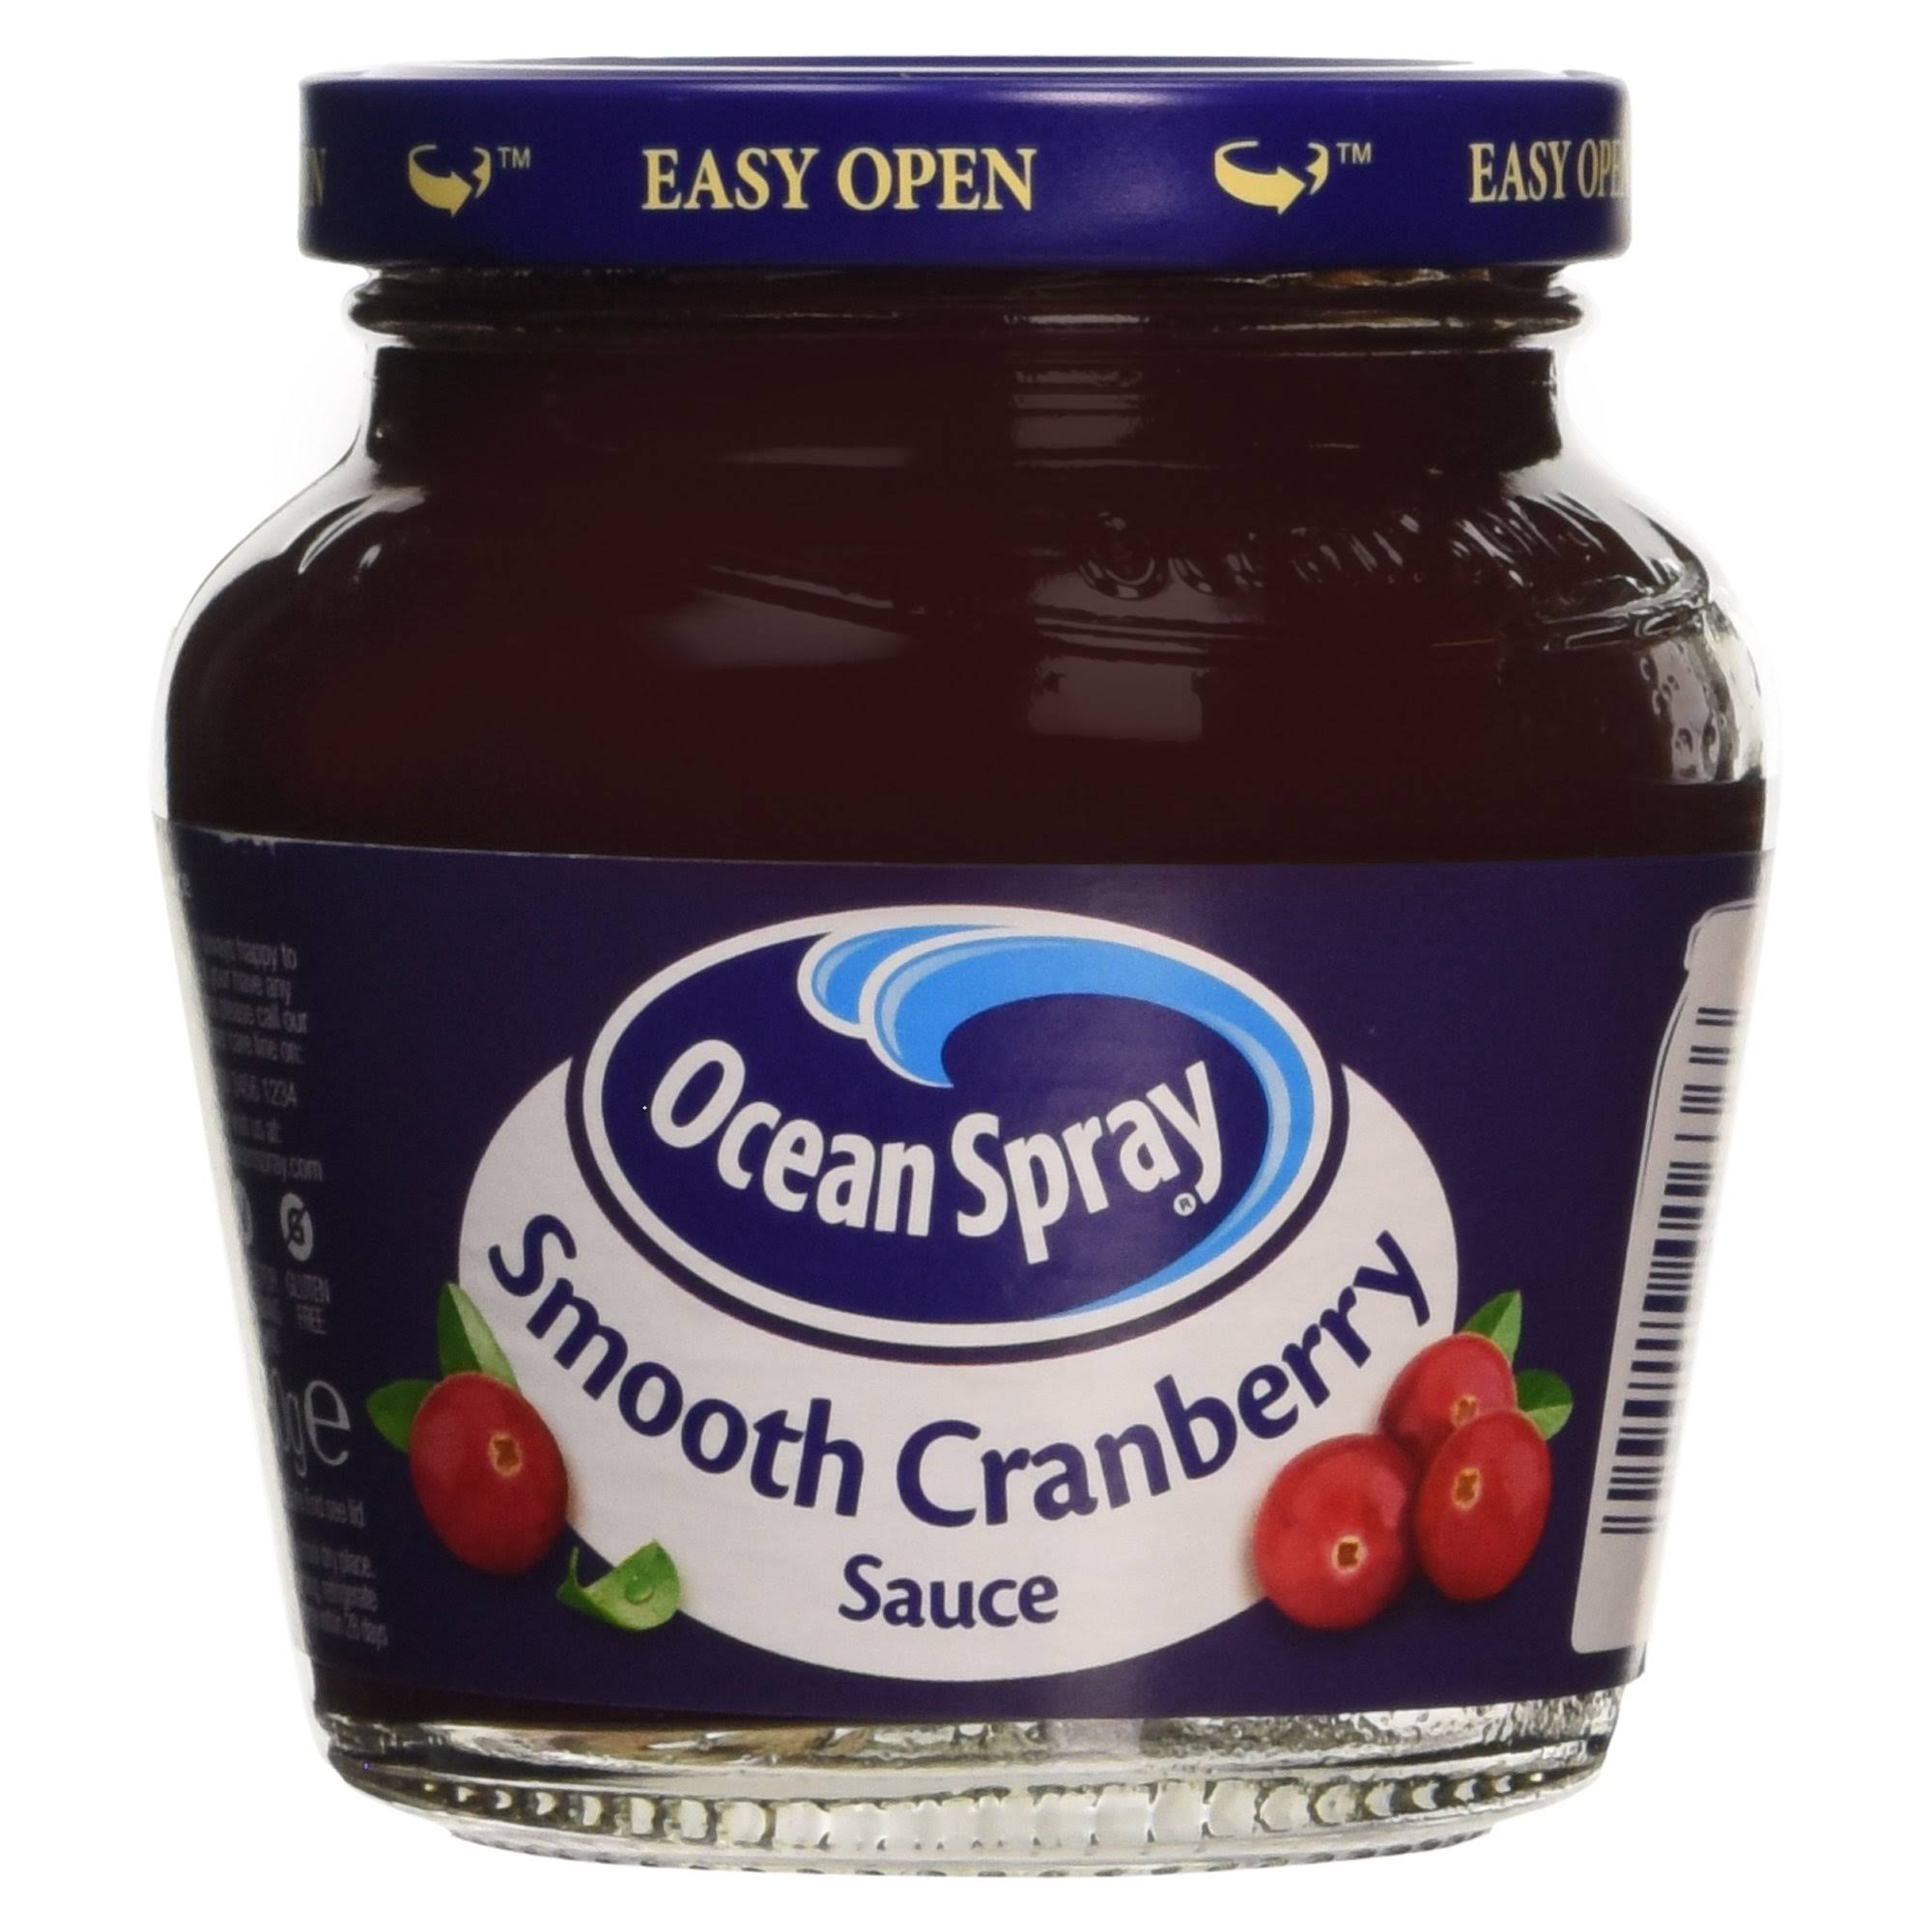 Ocean Spray Smooth Sauce - Cranberry, 250g